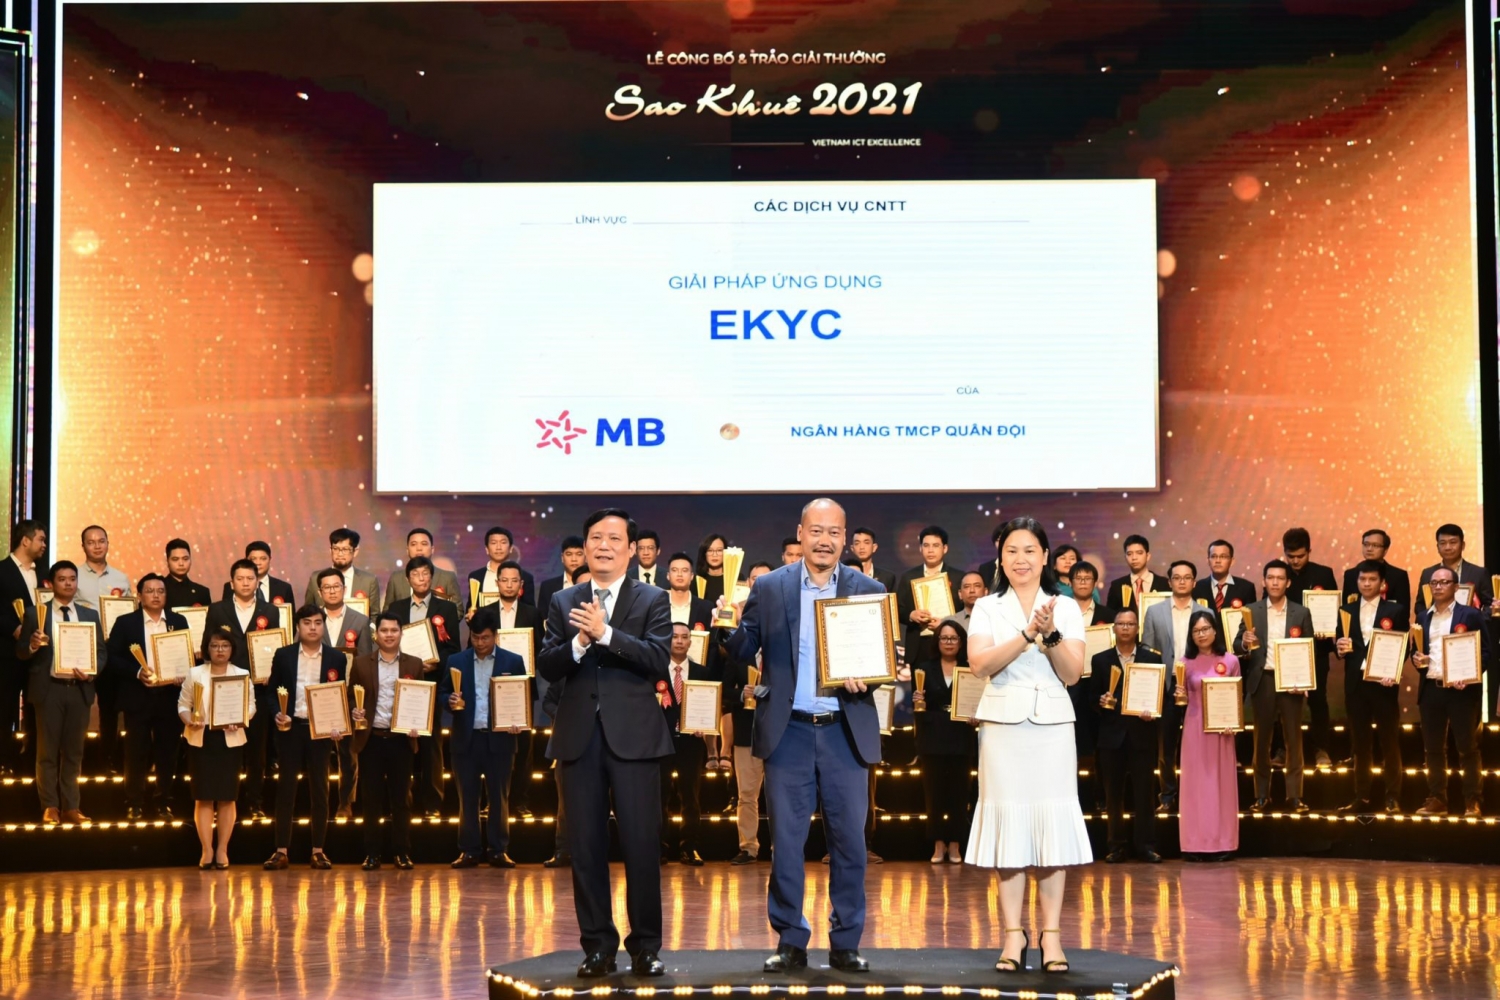 Giải pháp eKYC của MB xuất sắc giành giải thưởng “Sao Khuê 2021”